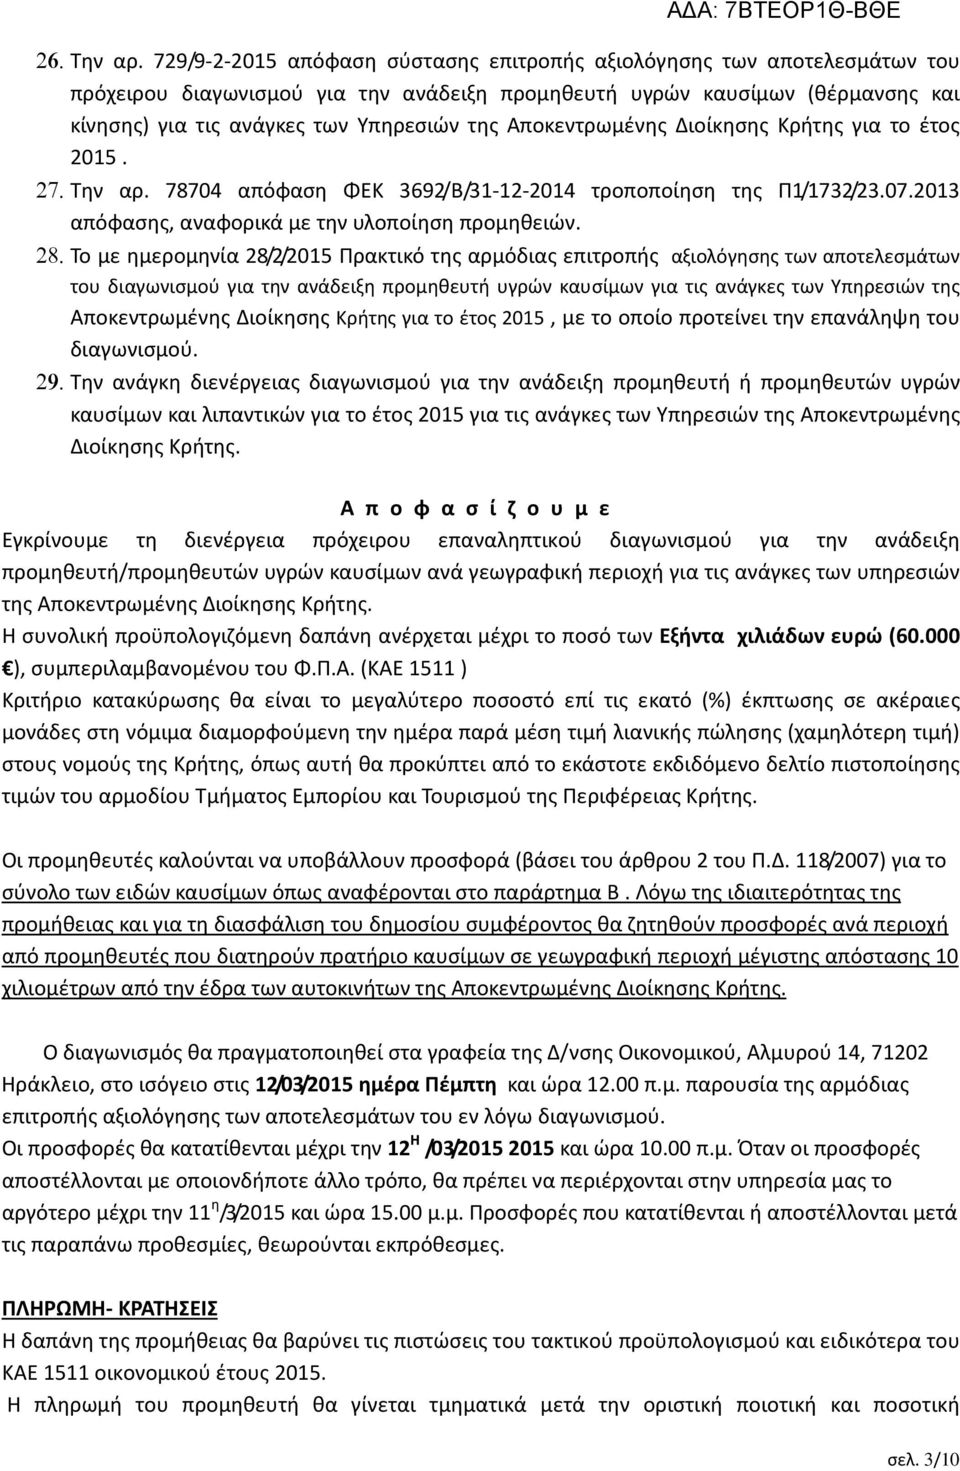 Αποκεντρωμένης Διοίκησης Κρήτης για το έτος 2015. 27. Την αρ. 78704 απόφαση ΦΕΚ 3692/Β/31-12-2014 τροποποίηση της Π1/1732/23.07.2013 απόφασης, αναφορικά με την υλοποίηση προμηθειών. 28.